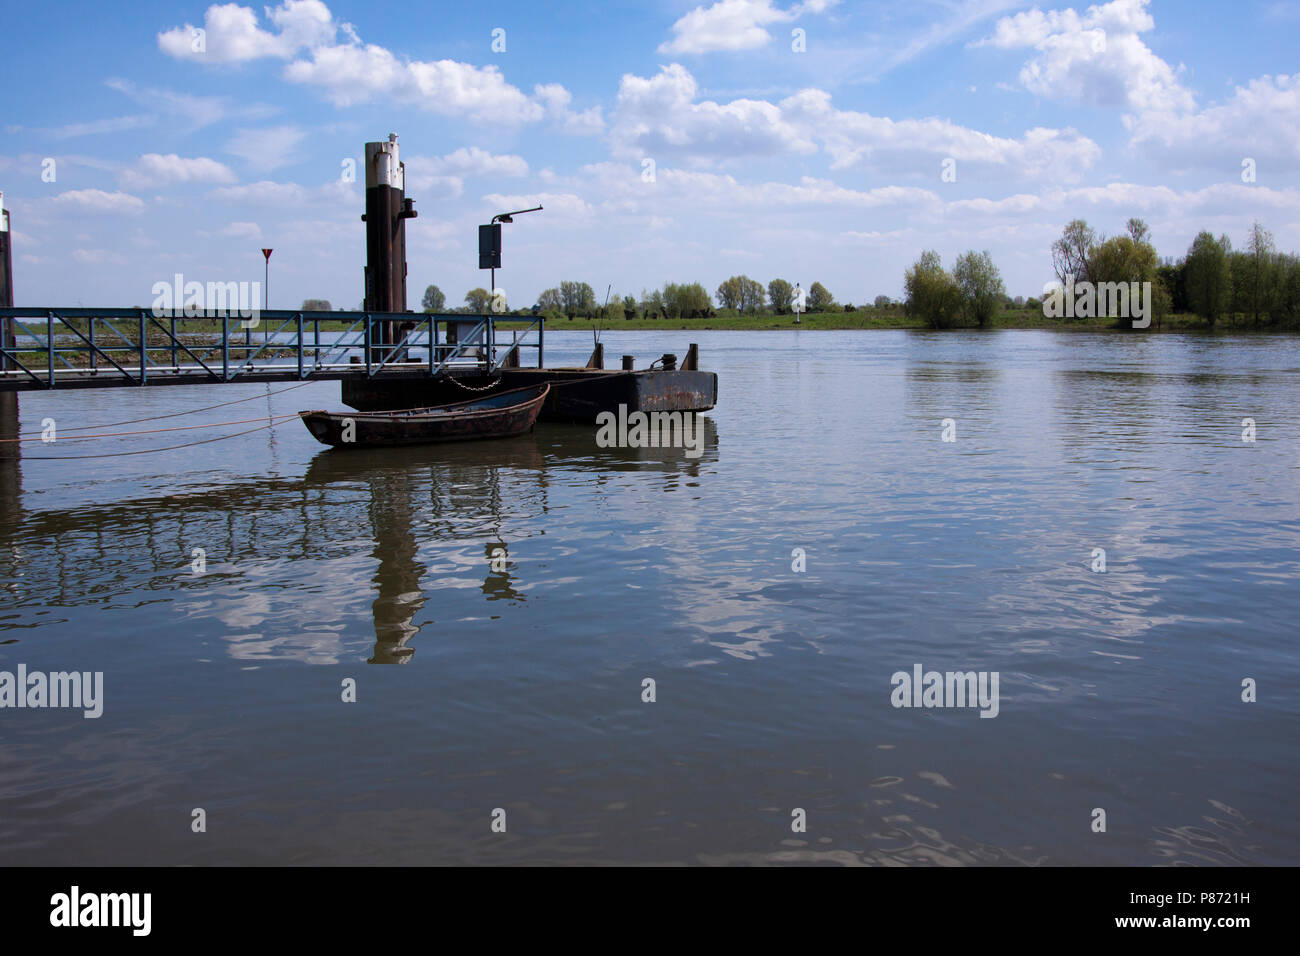 Veerpont más de Rijn (Nederland), ferry sobre el río Rin (Países Bajos) Foto de stock